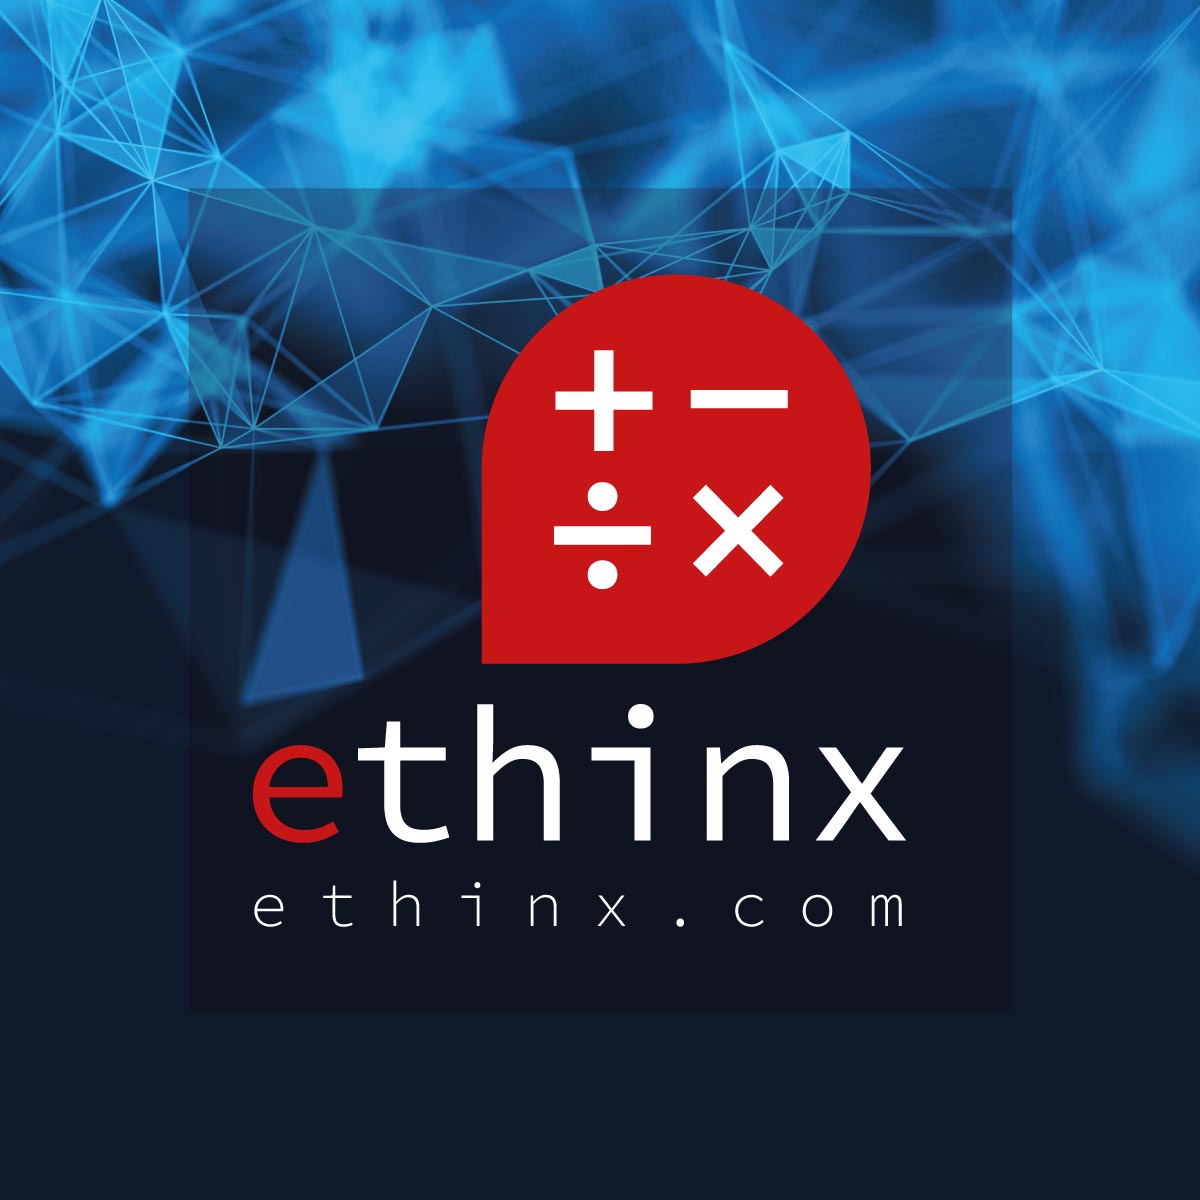 ethinx.com - Ai Branding name